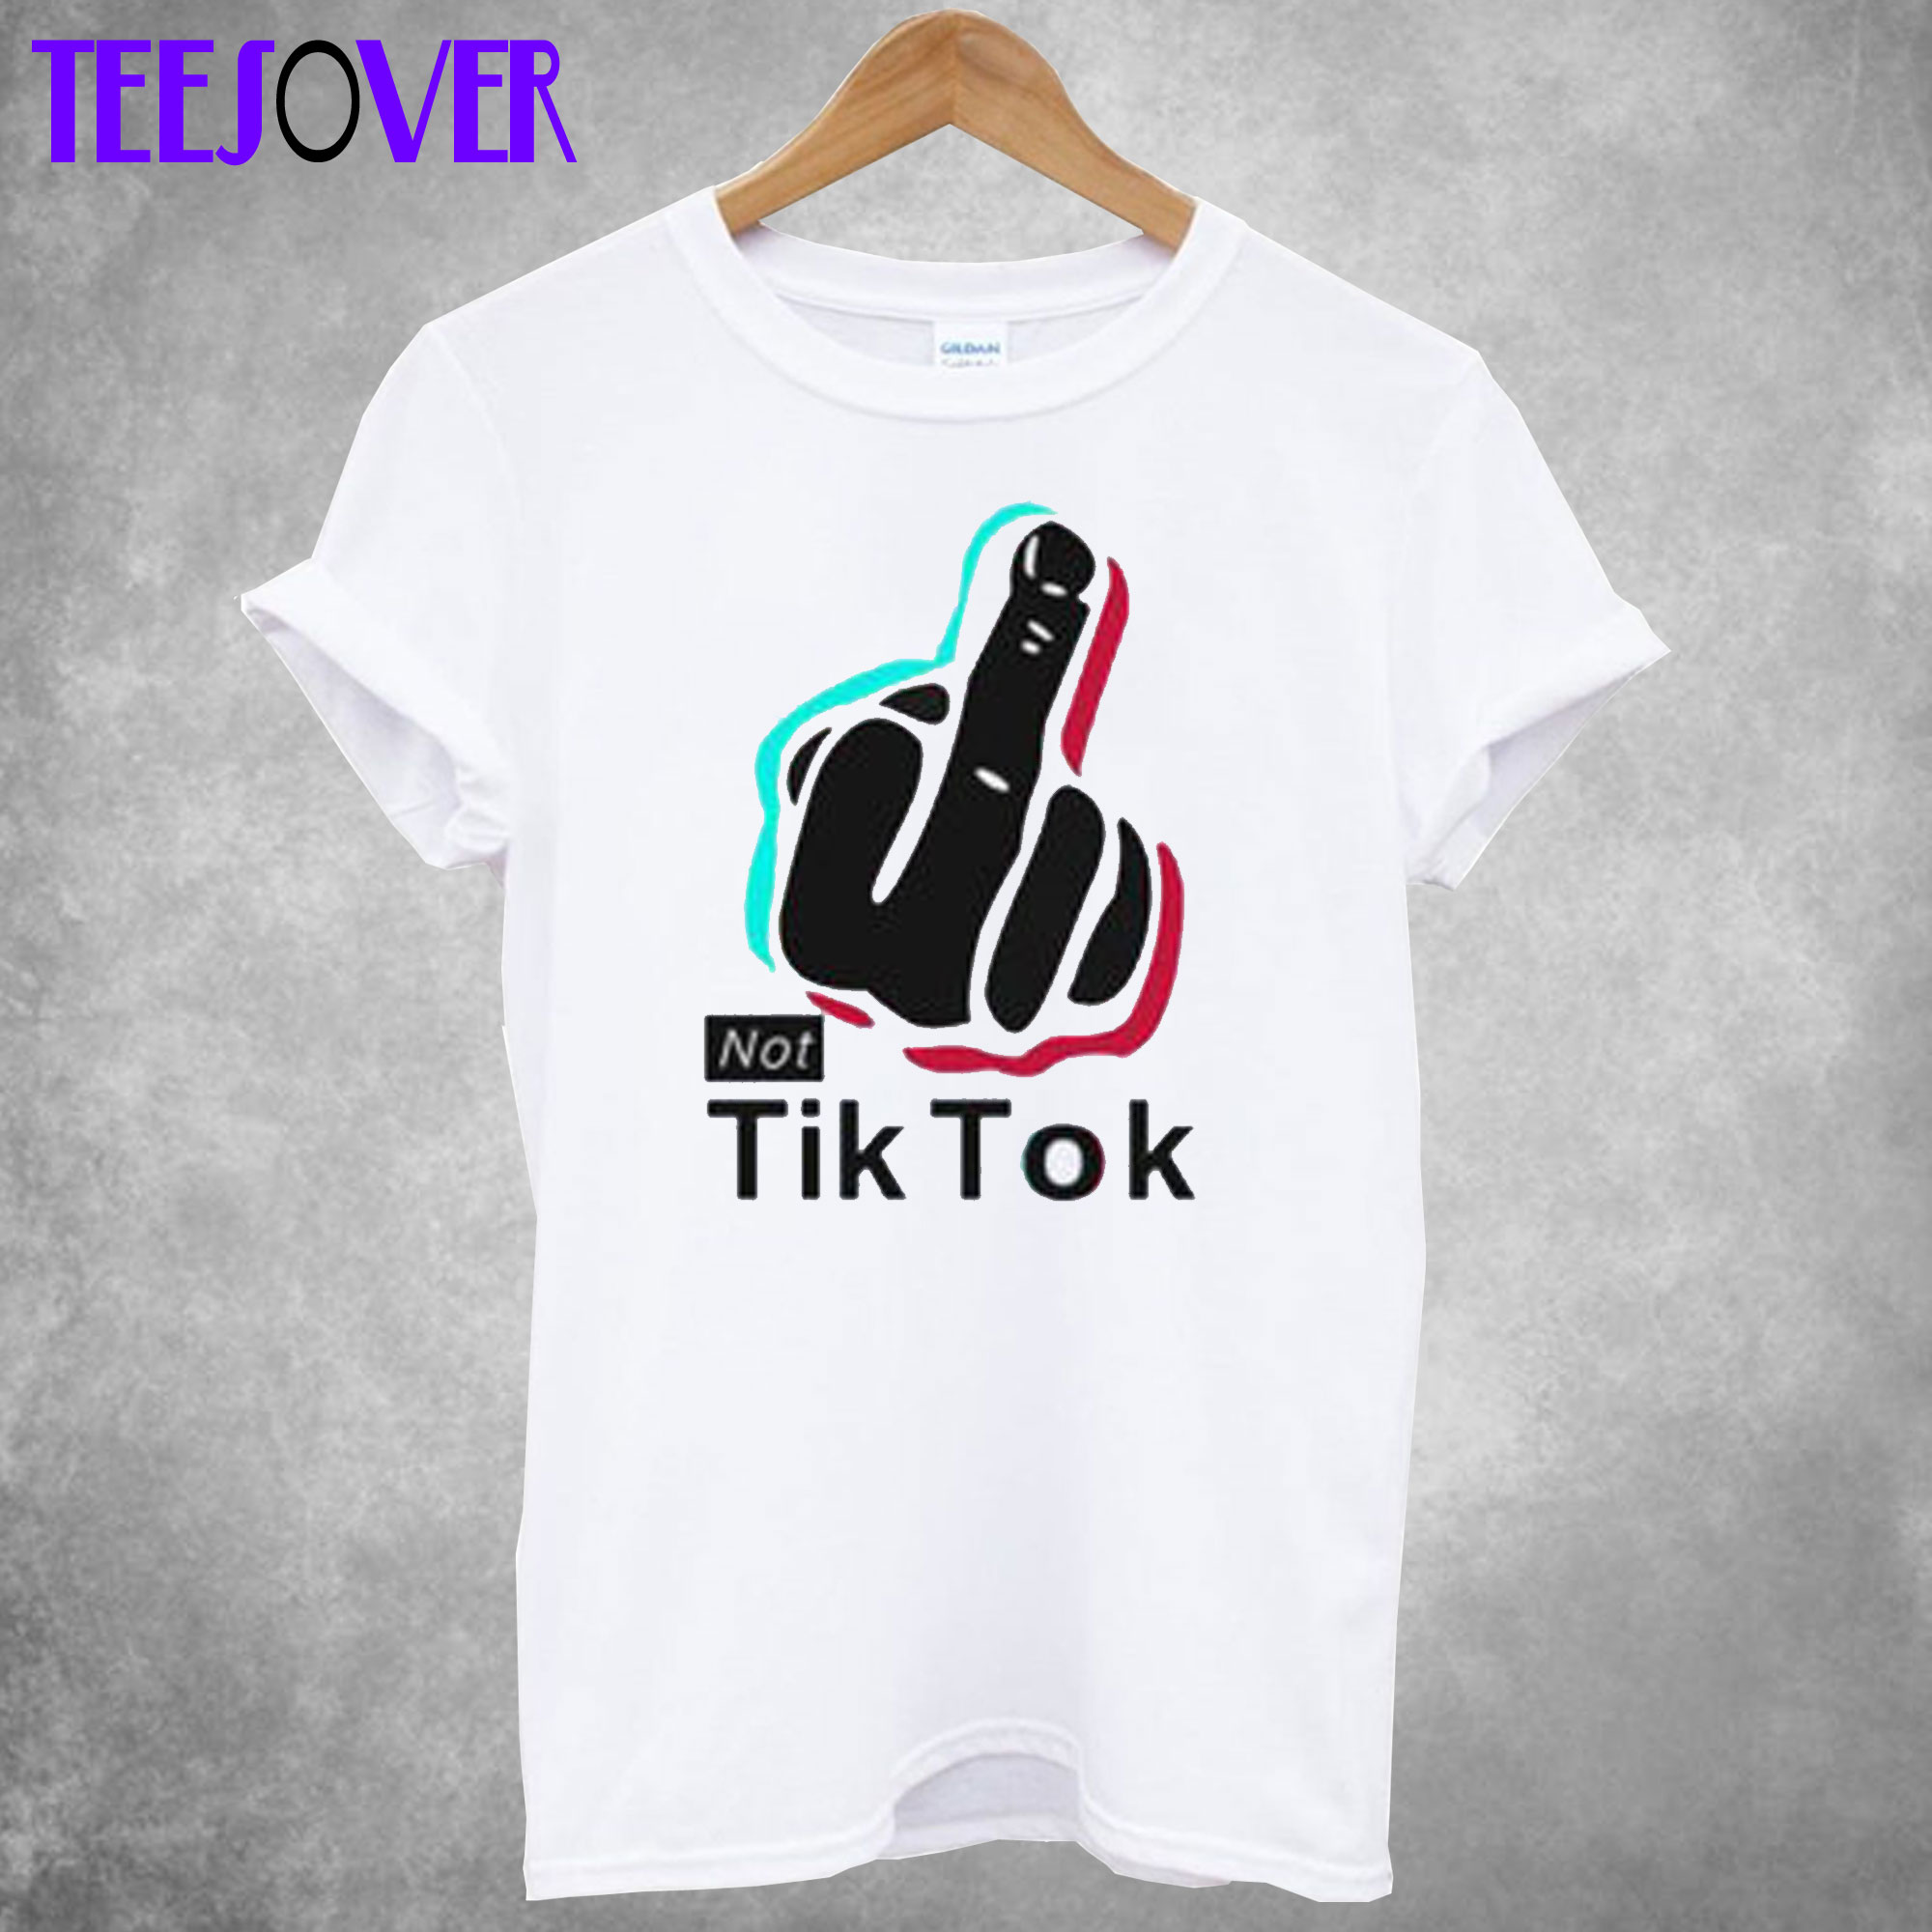 Not TikTok T-Shirt